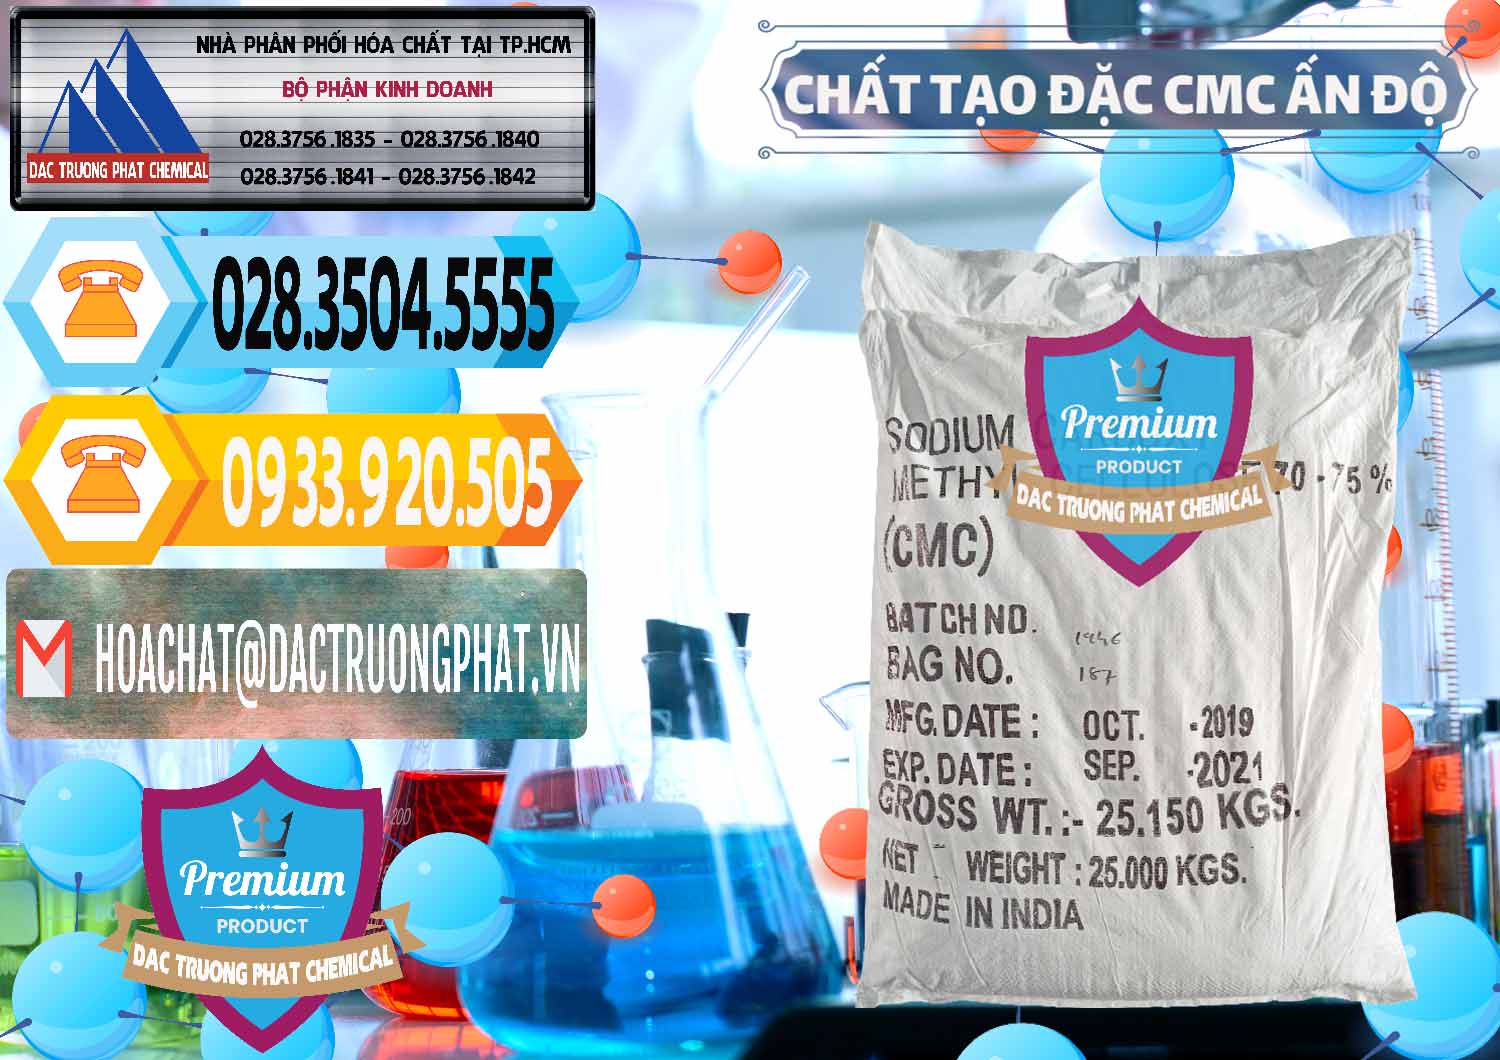 Cty nhập khẩu ( bán ) Chất Tạo Đặc CMC - Carboxyl Methyl Cellulose Ấn Độ India - 0044 - Cty cung cấp - nhập khẩu hóa chất tại TP.HCM - hoachattayrua.net